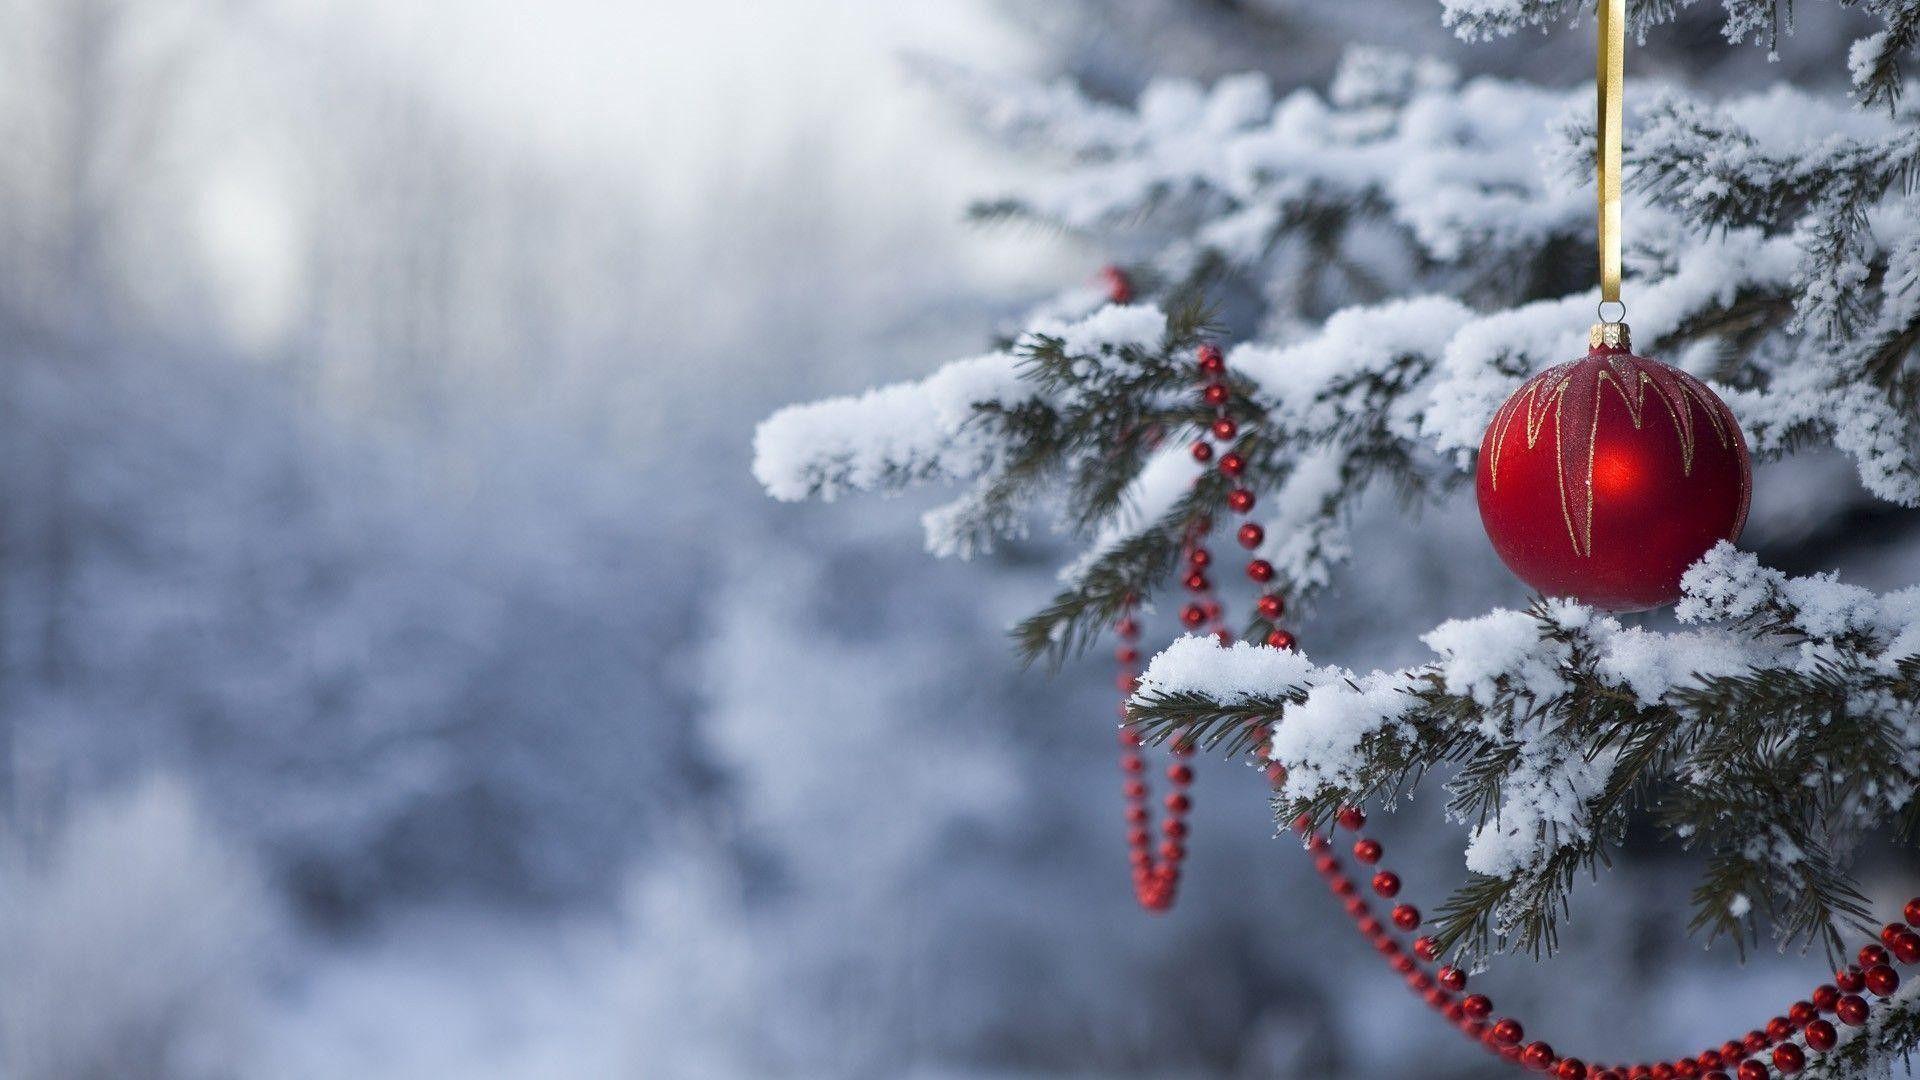 Cùng tìm hiểu những hình nền Giáng sinh siêu đẹp cho mùa Noel này nhé! Hình ảnh chim cánh cụt và tuần lộc, cây thông ngập tràn quà tặng hay những con tuyết tuyệt đẹp sẽ tạo nên một không khí Noel đầy màu sắc và tuyệt vời. Hãy cập nhật ngay cho điện thoại của bạn để tận hưởng một mùa Noel thật đáng nhớ!